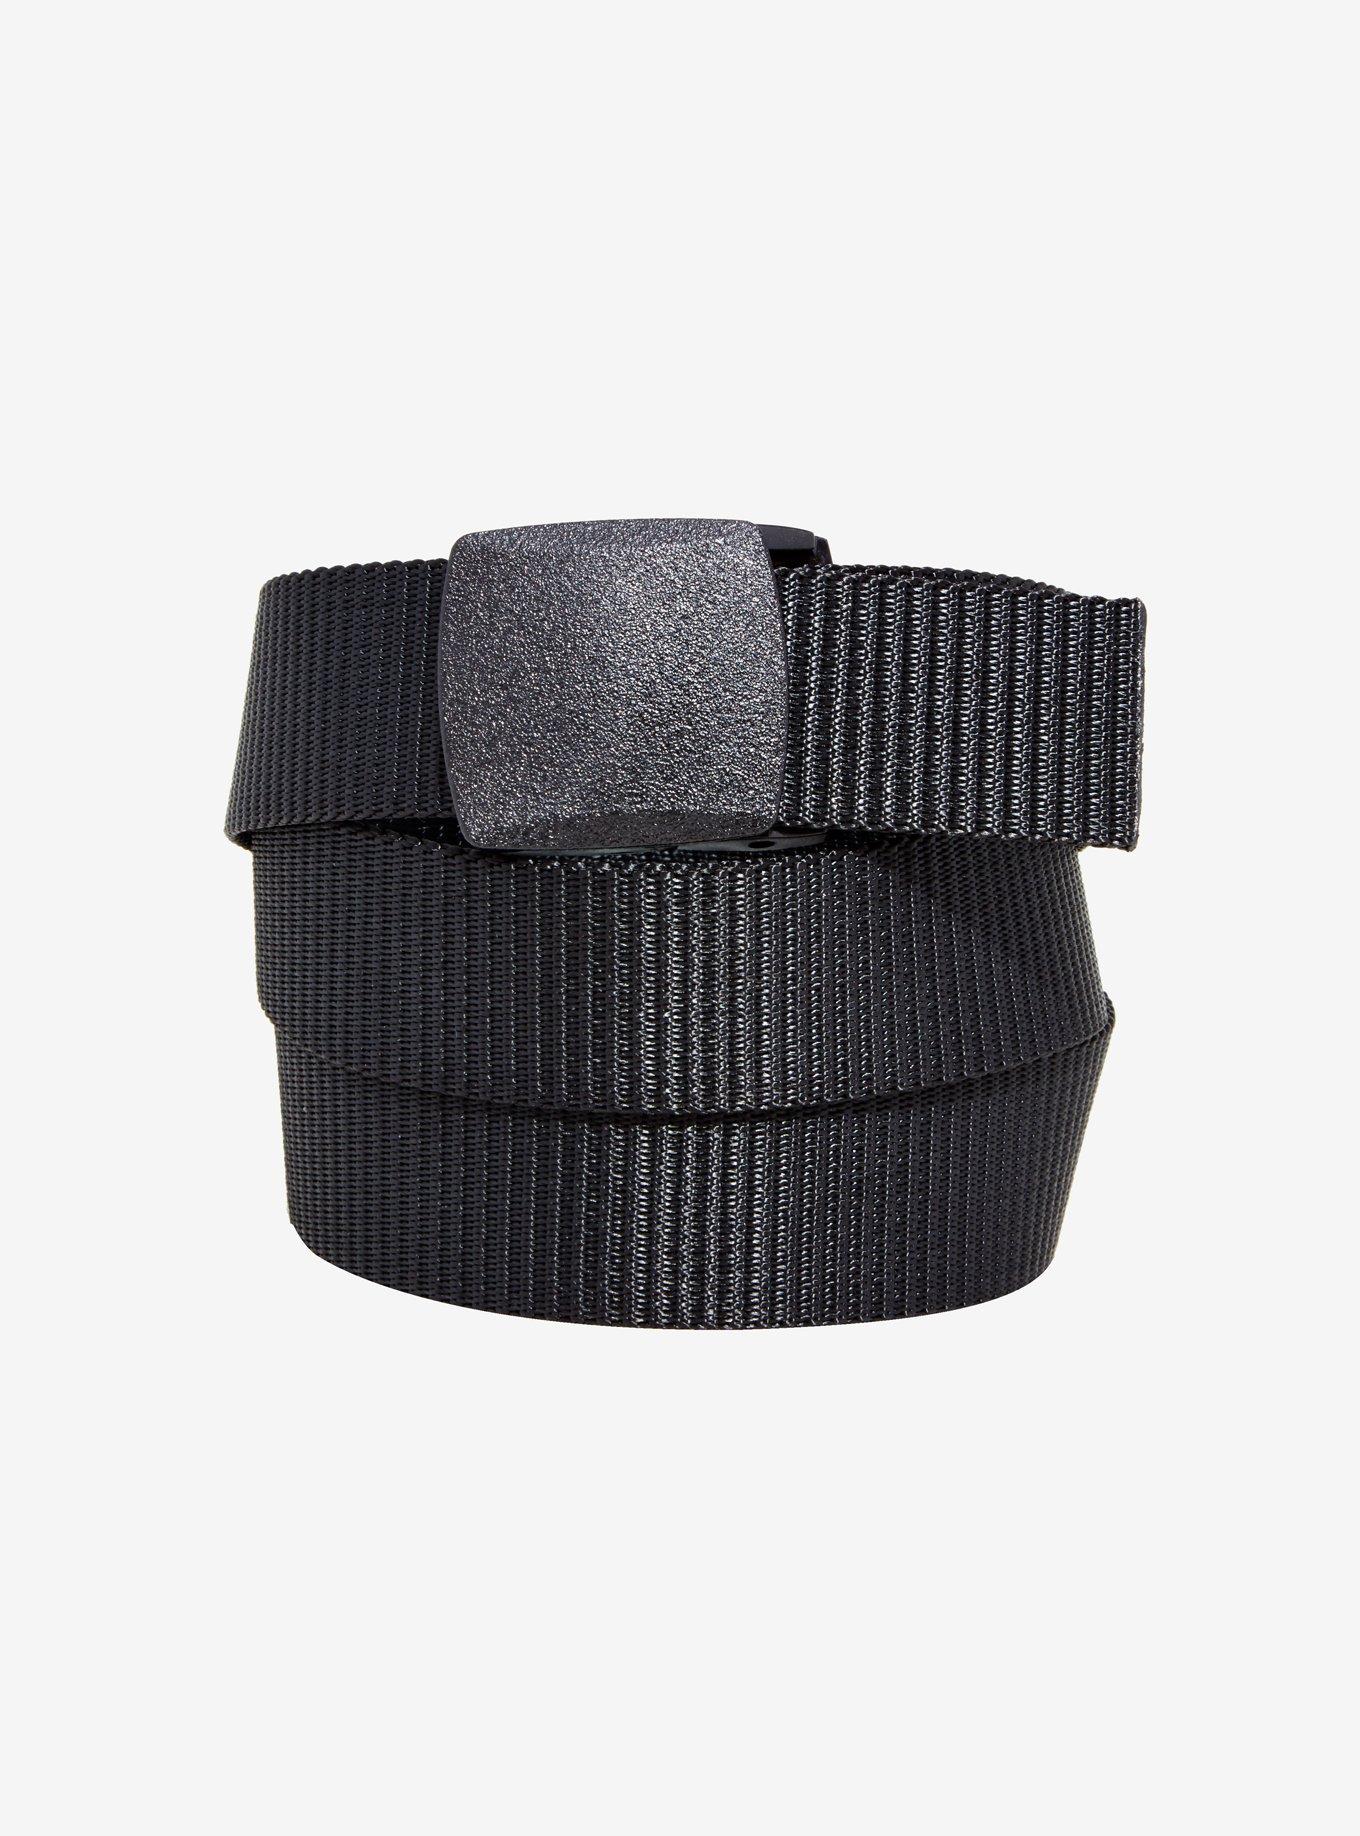 Black Web Belt, , hi-res